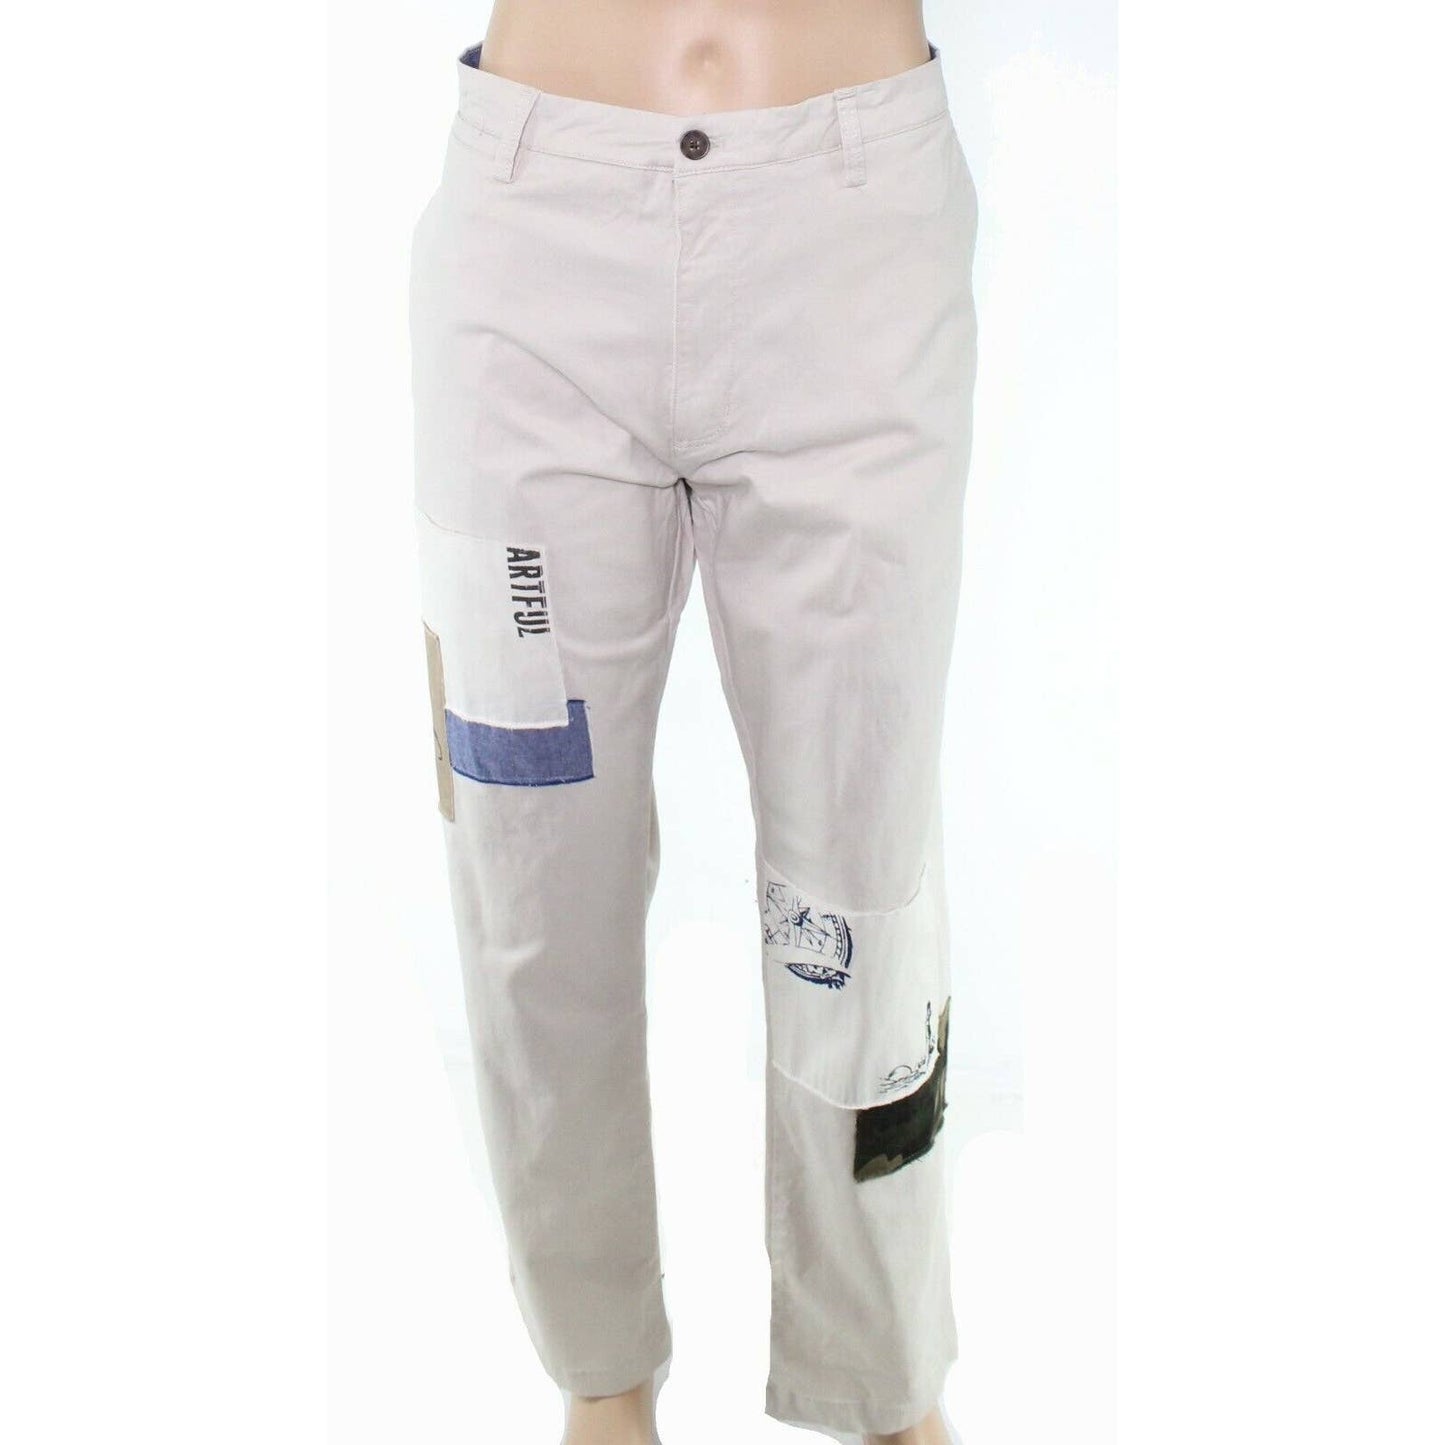 CLUB ROOM, Men's Serine Beige Pants, Classic Fit, Size 34W 32L, NWT $89